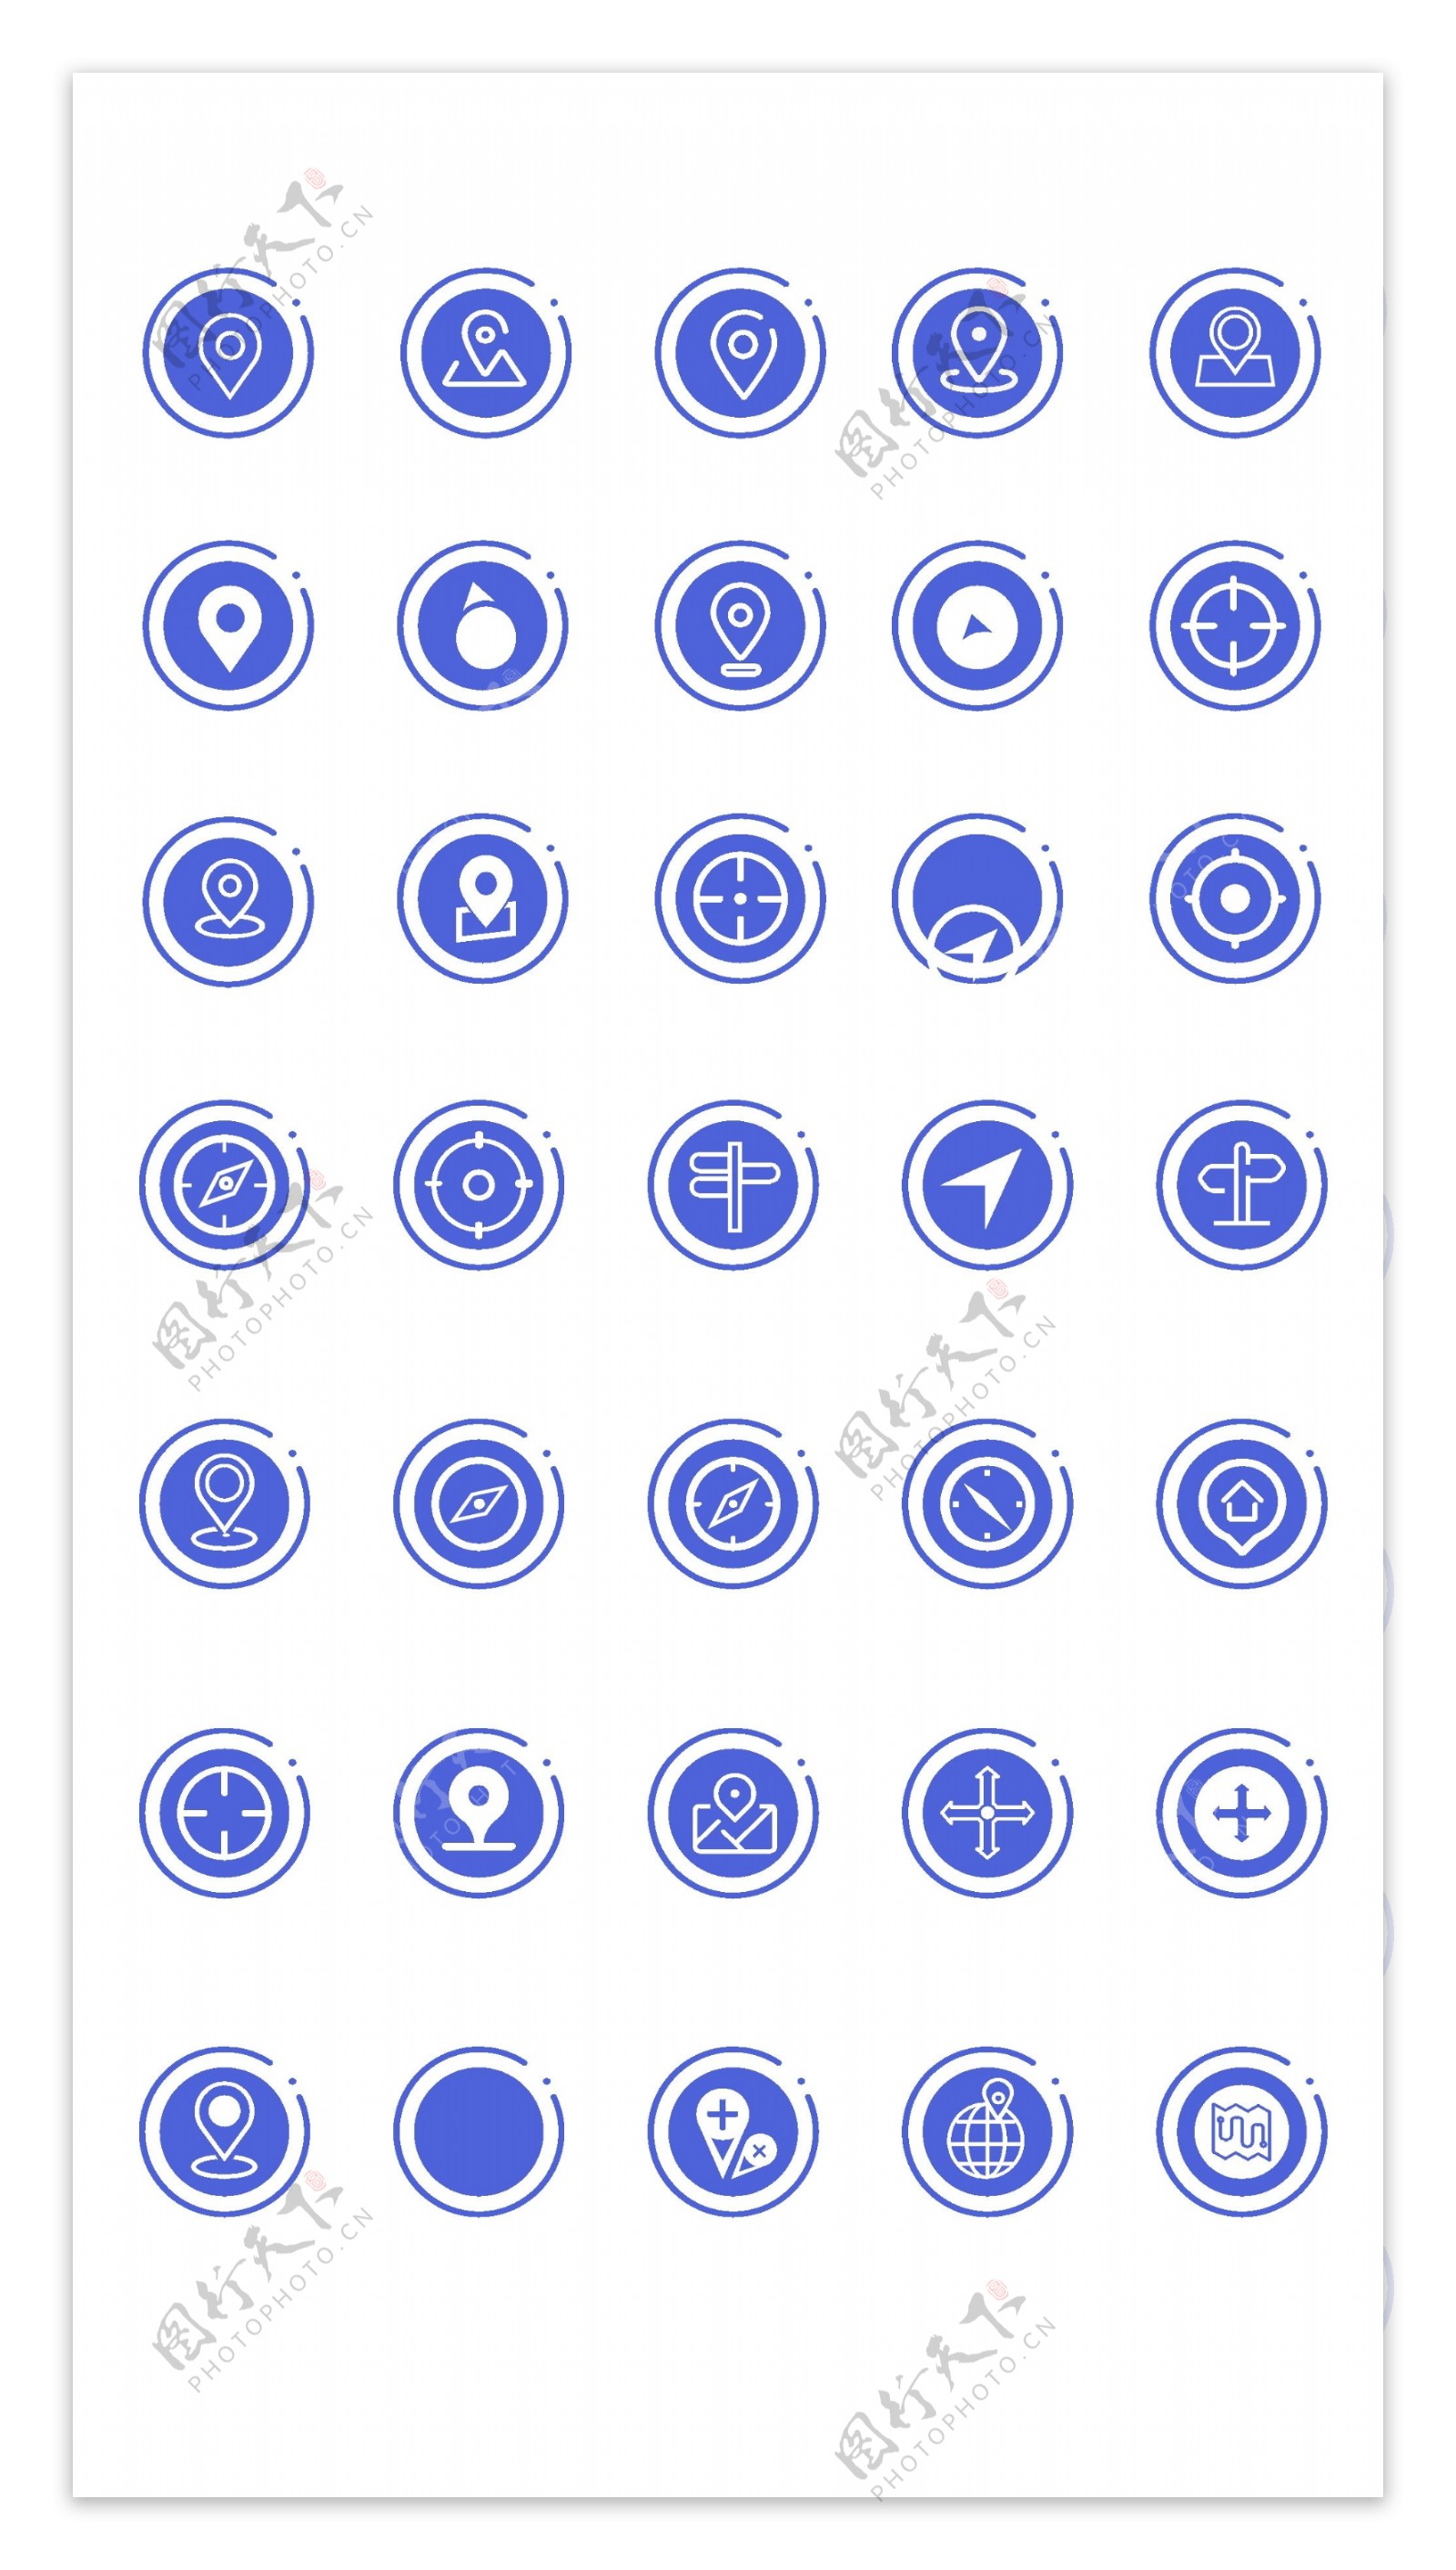 蓝色定位图标icon